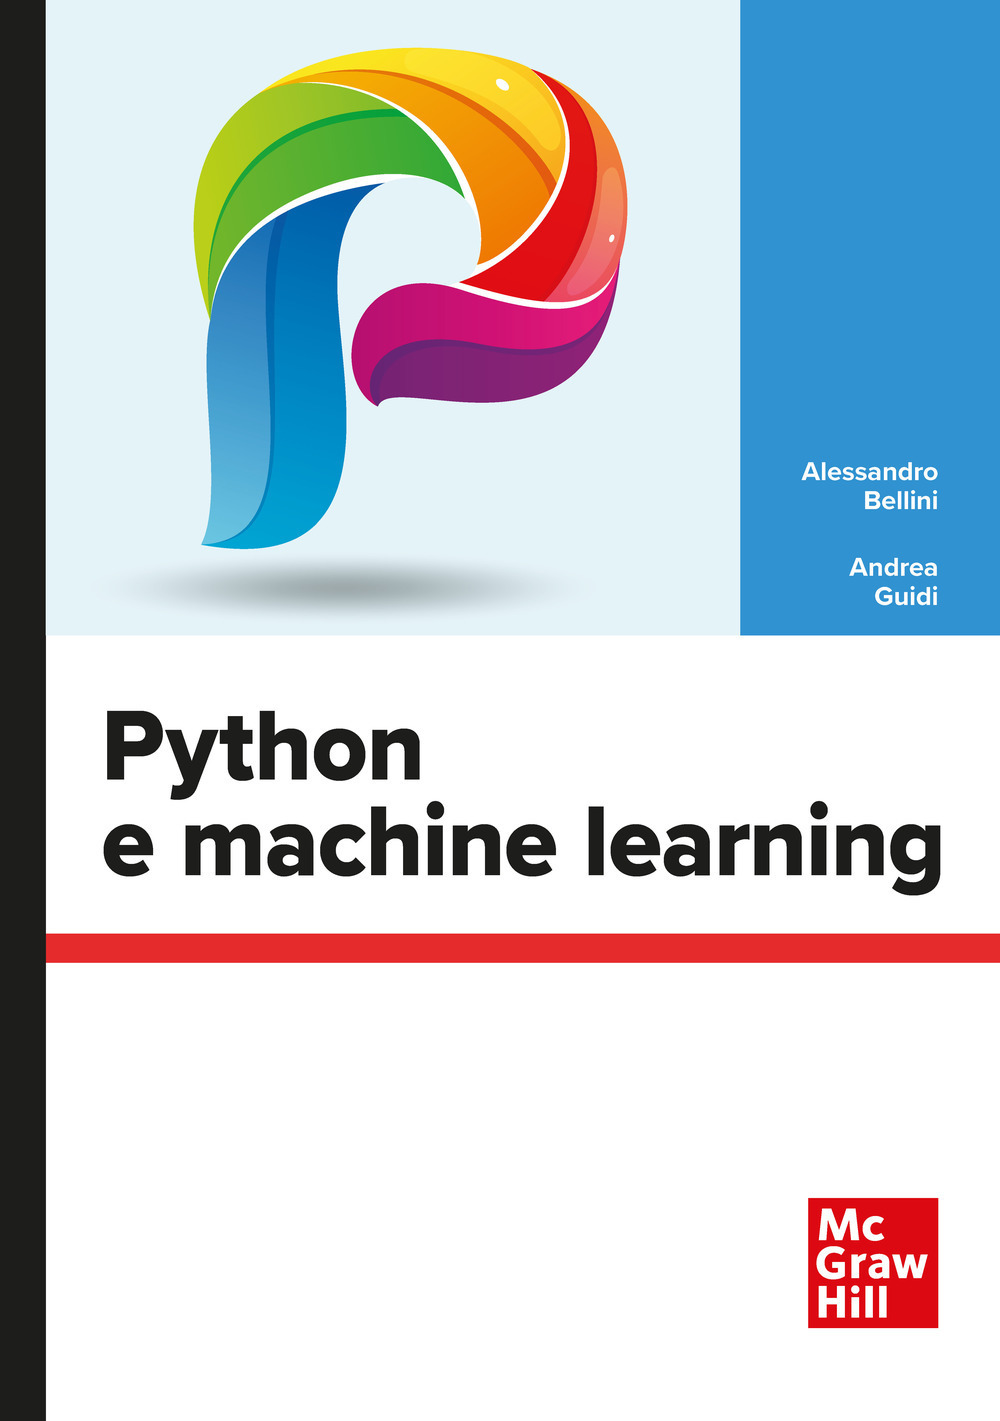 Libri Alessandro Bellini / Andrea Guidi - Python E Machine Learning NUOVO SIGILLATO, EDIZIONE DEL 01/01/2022 SUBITO DISPONIBILE